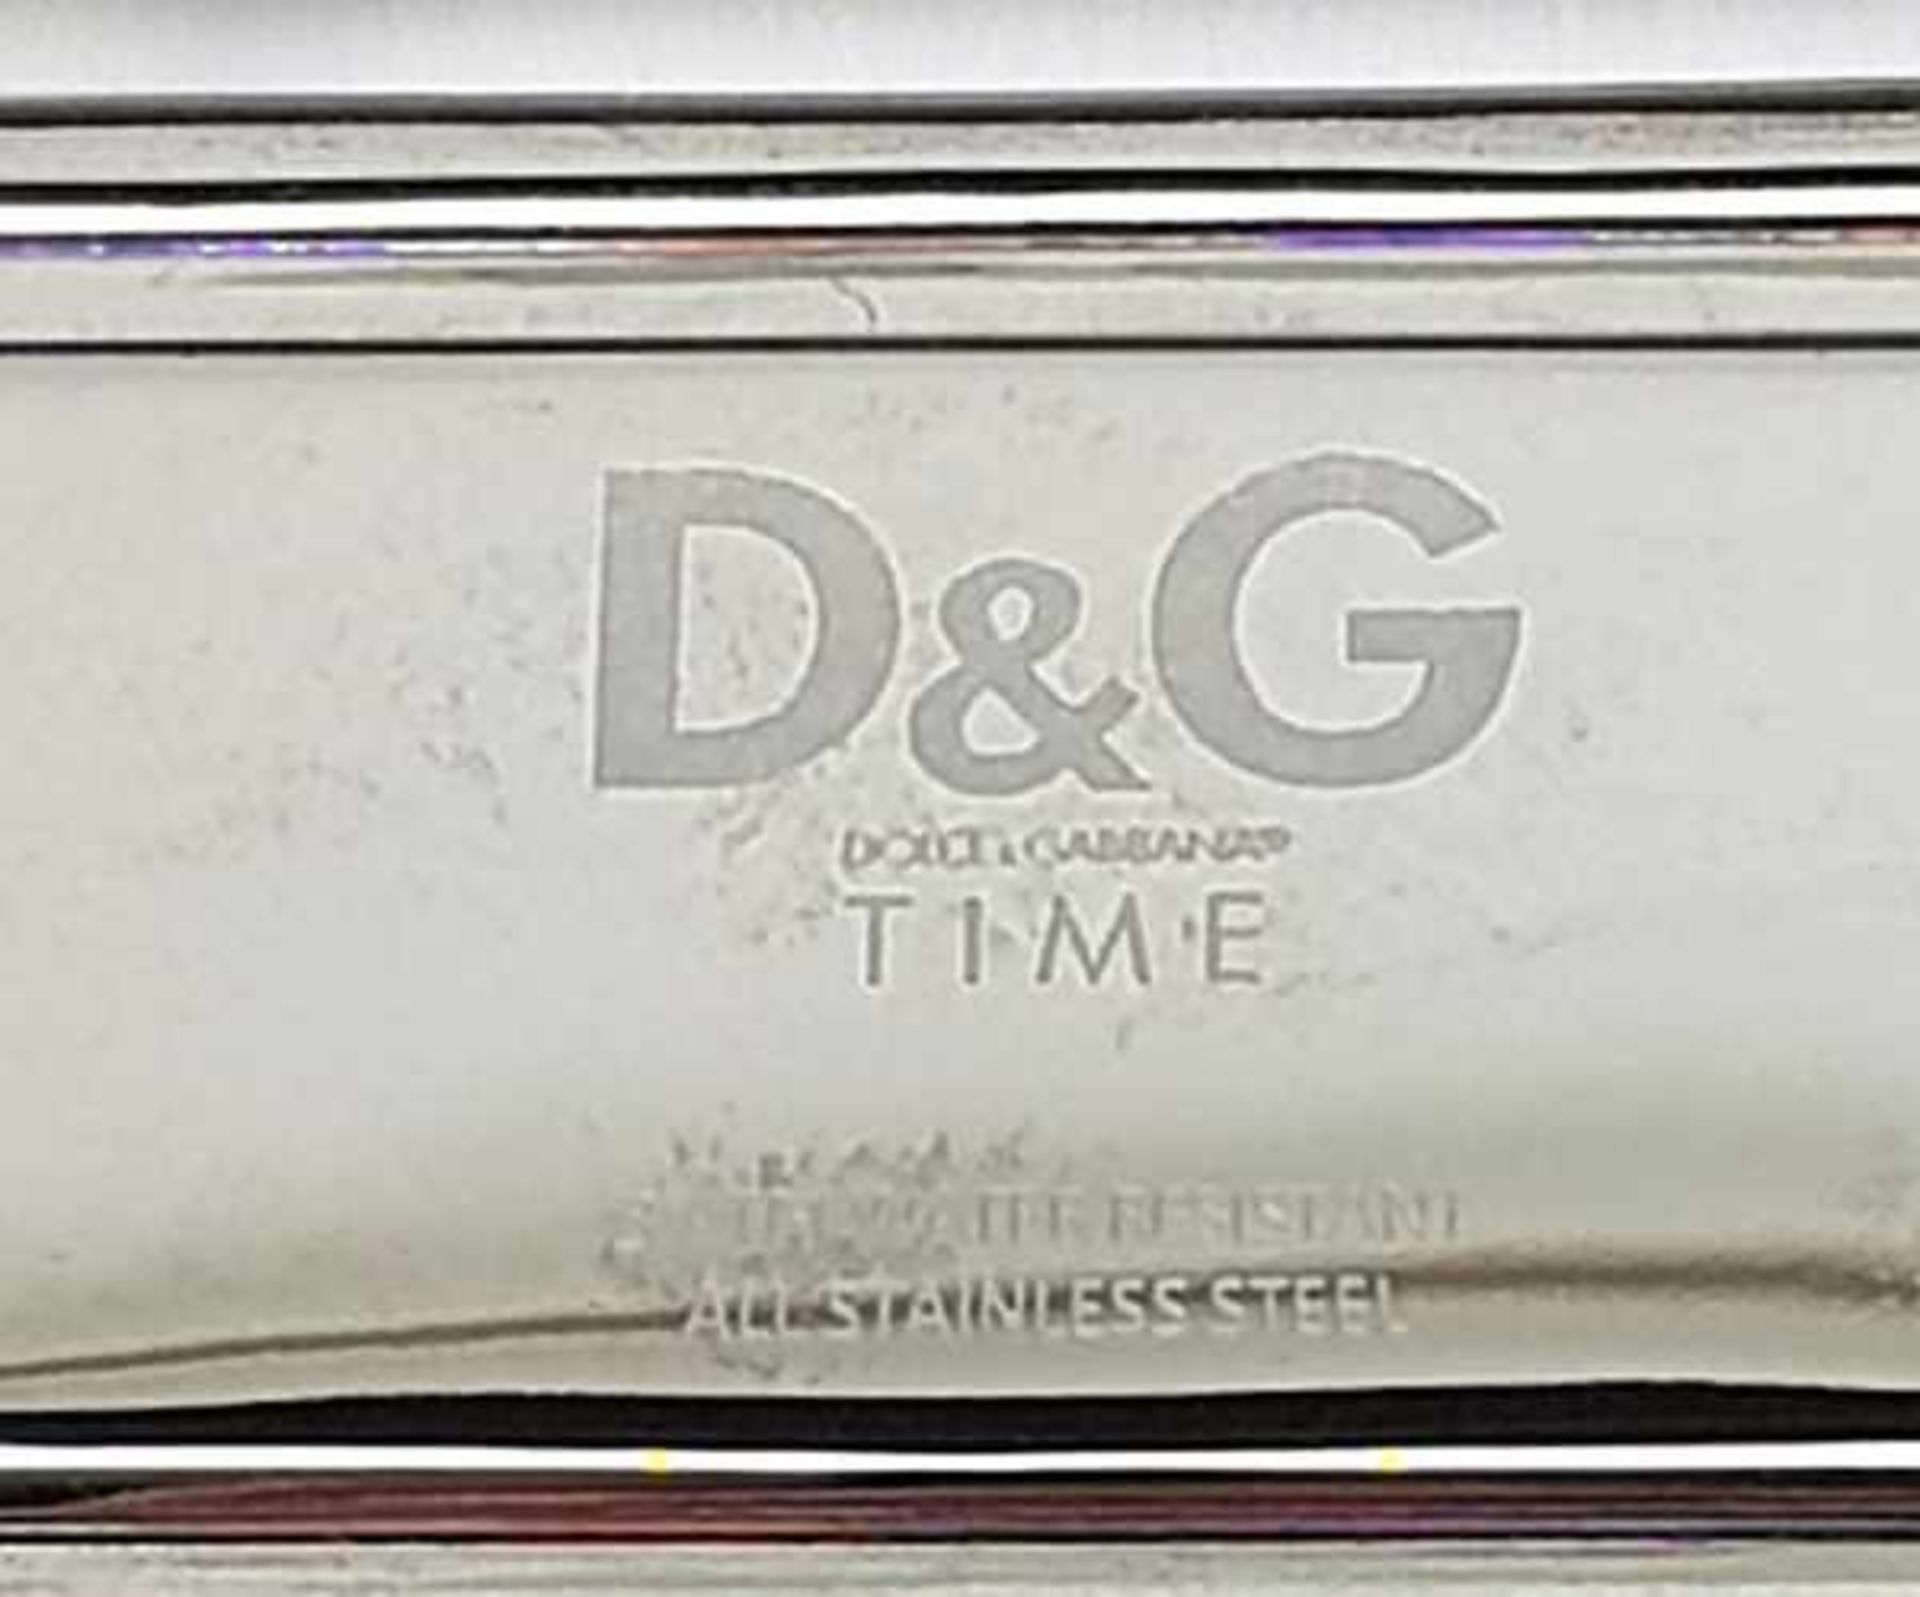 (Design) Dolce & Gabbana horlogeHorloge Dolce & Gabbana in orginele doos. Conditie: Verkleuring - Image 6 of 9